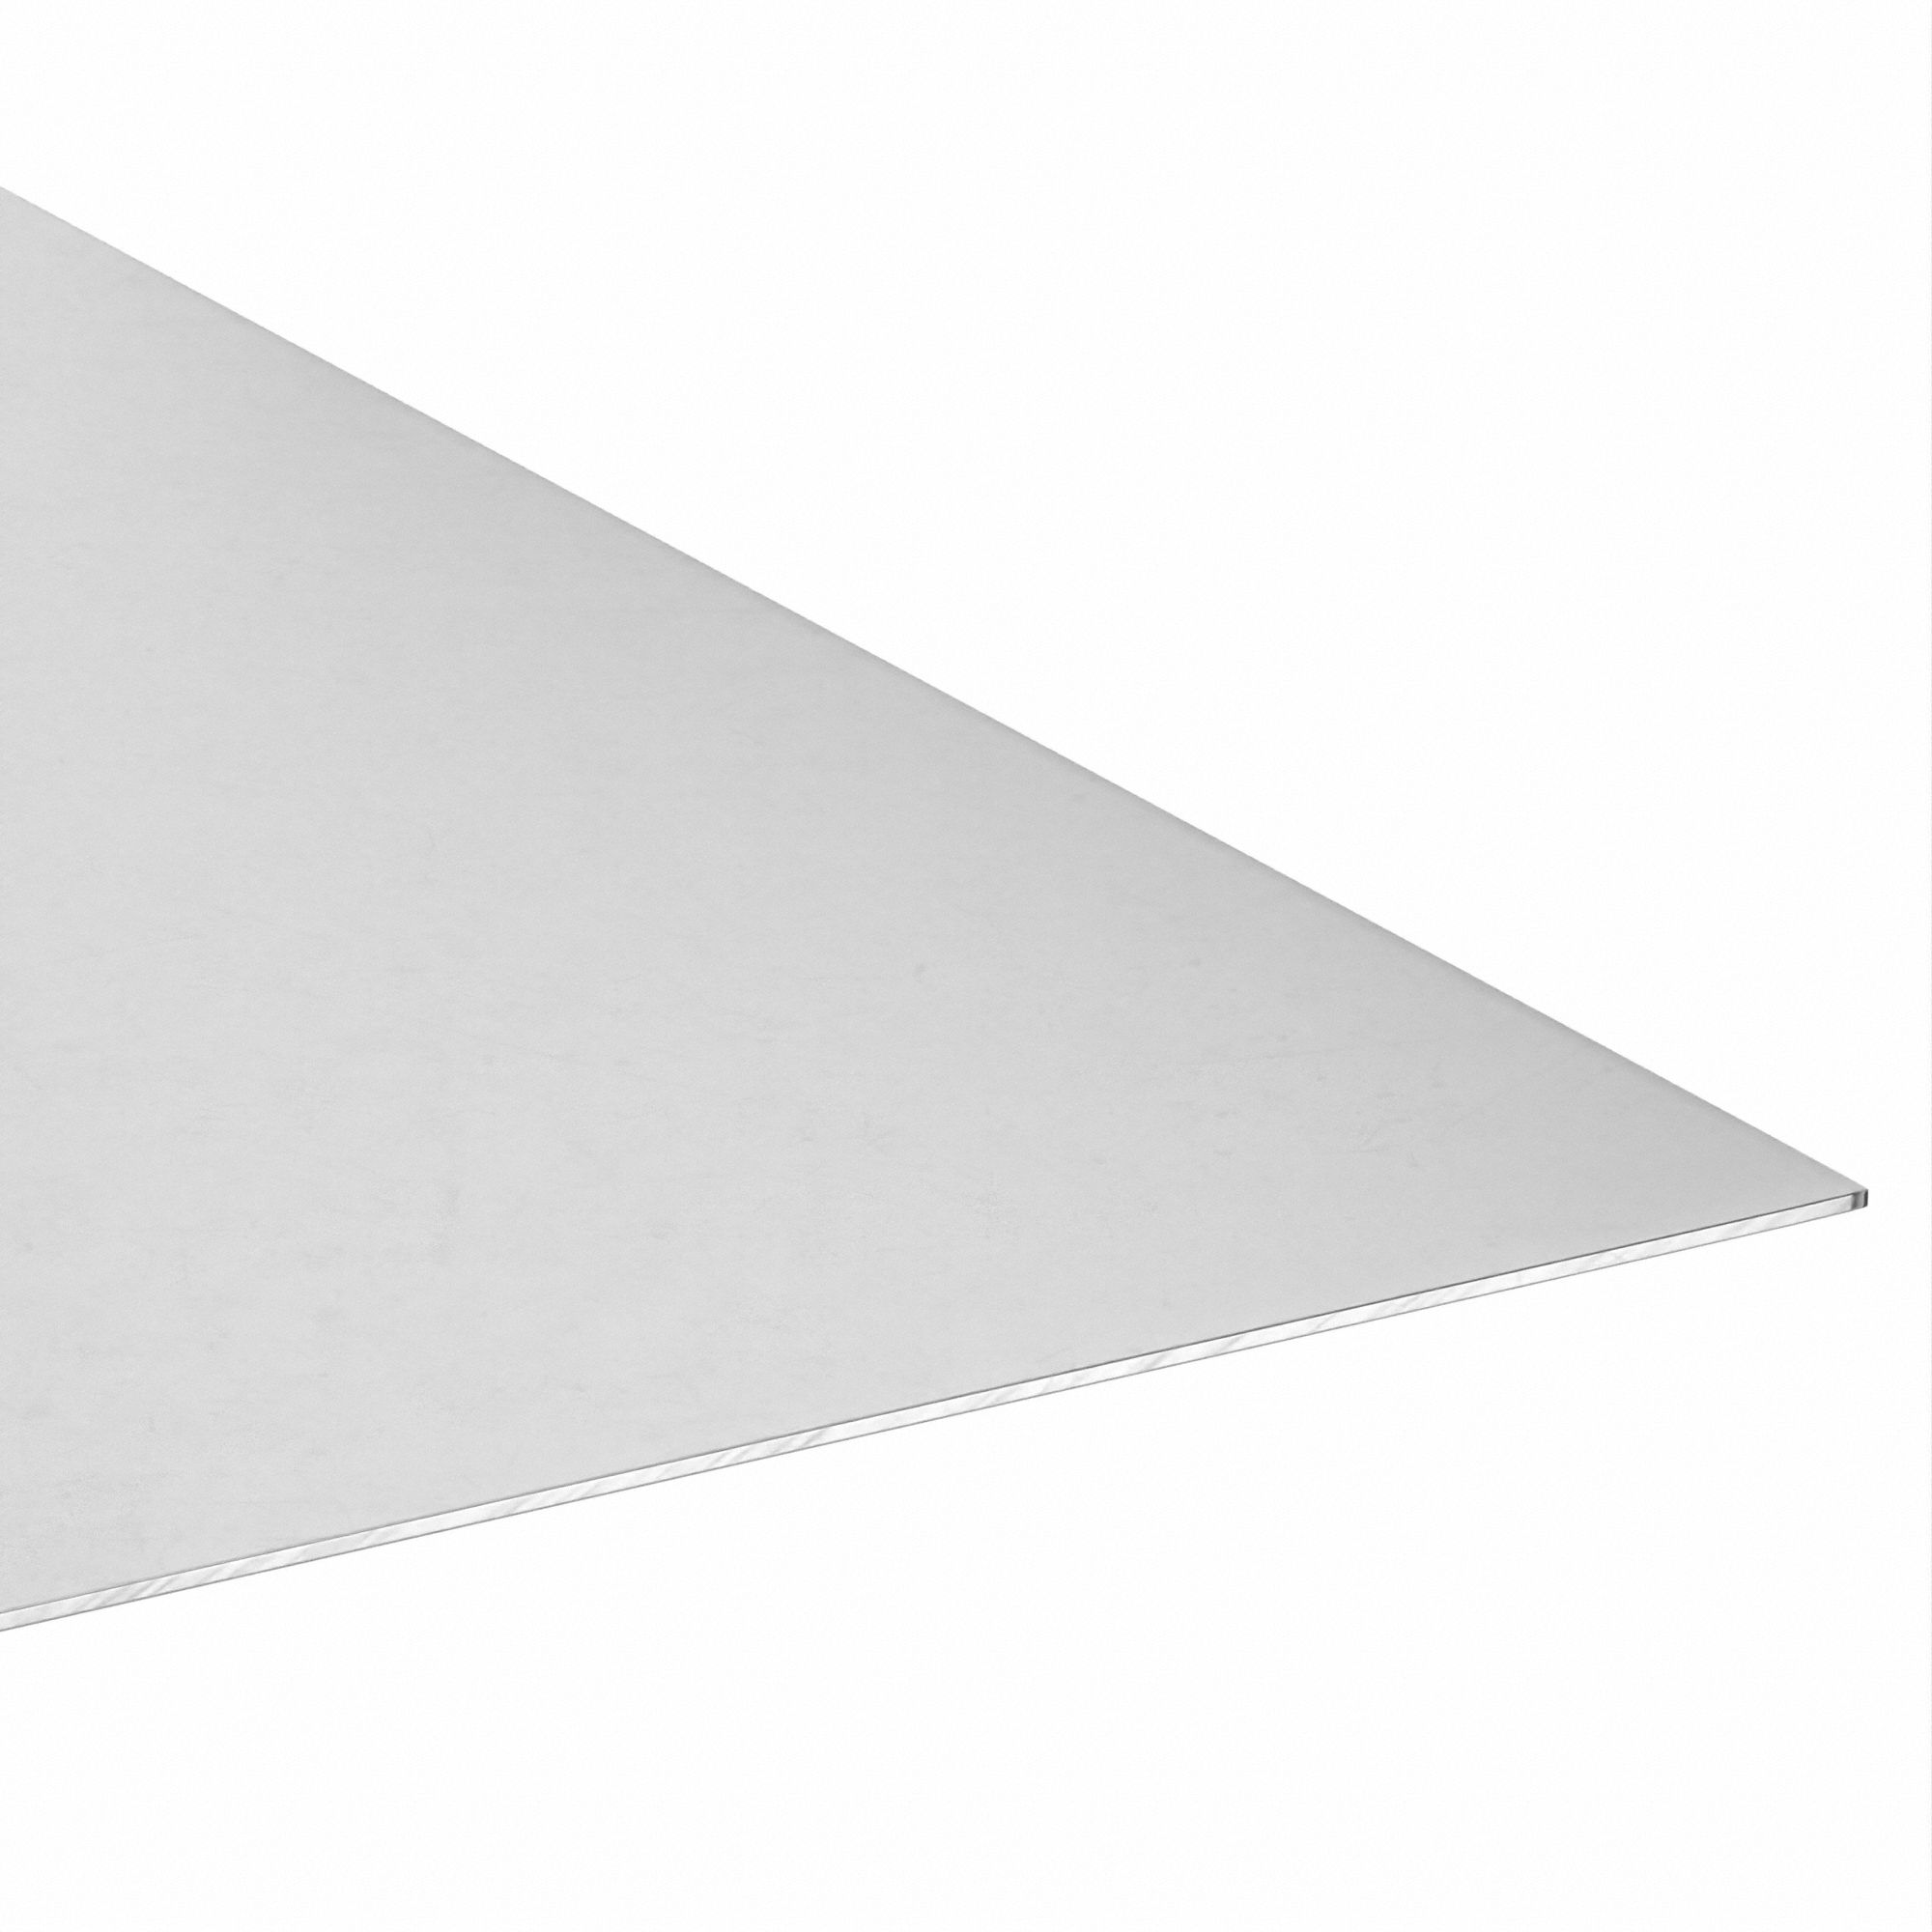 H14, 4 ft Overall Lg, Aluminum Sheet 1100 - 786AE5|8025_24_48 - Grainger